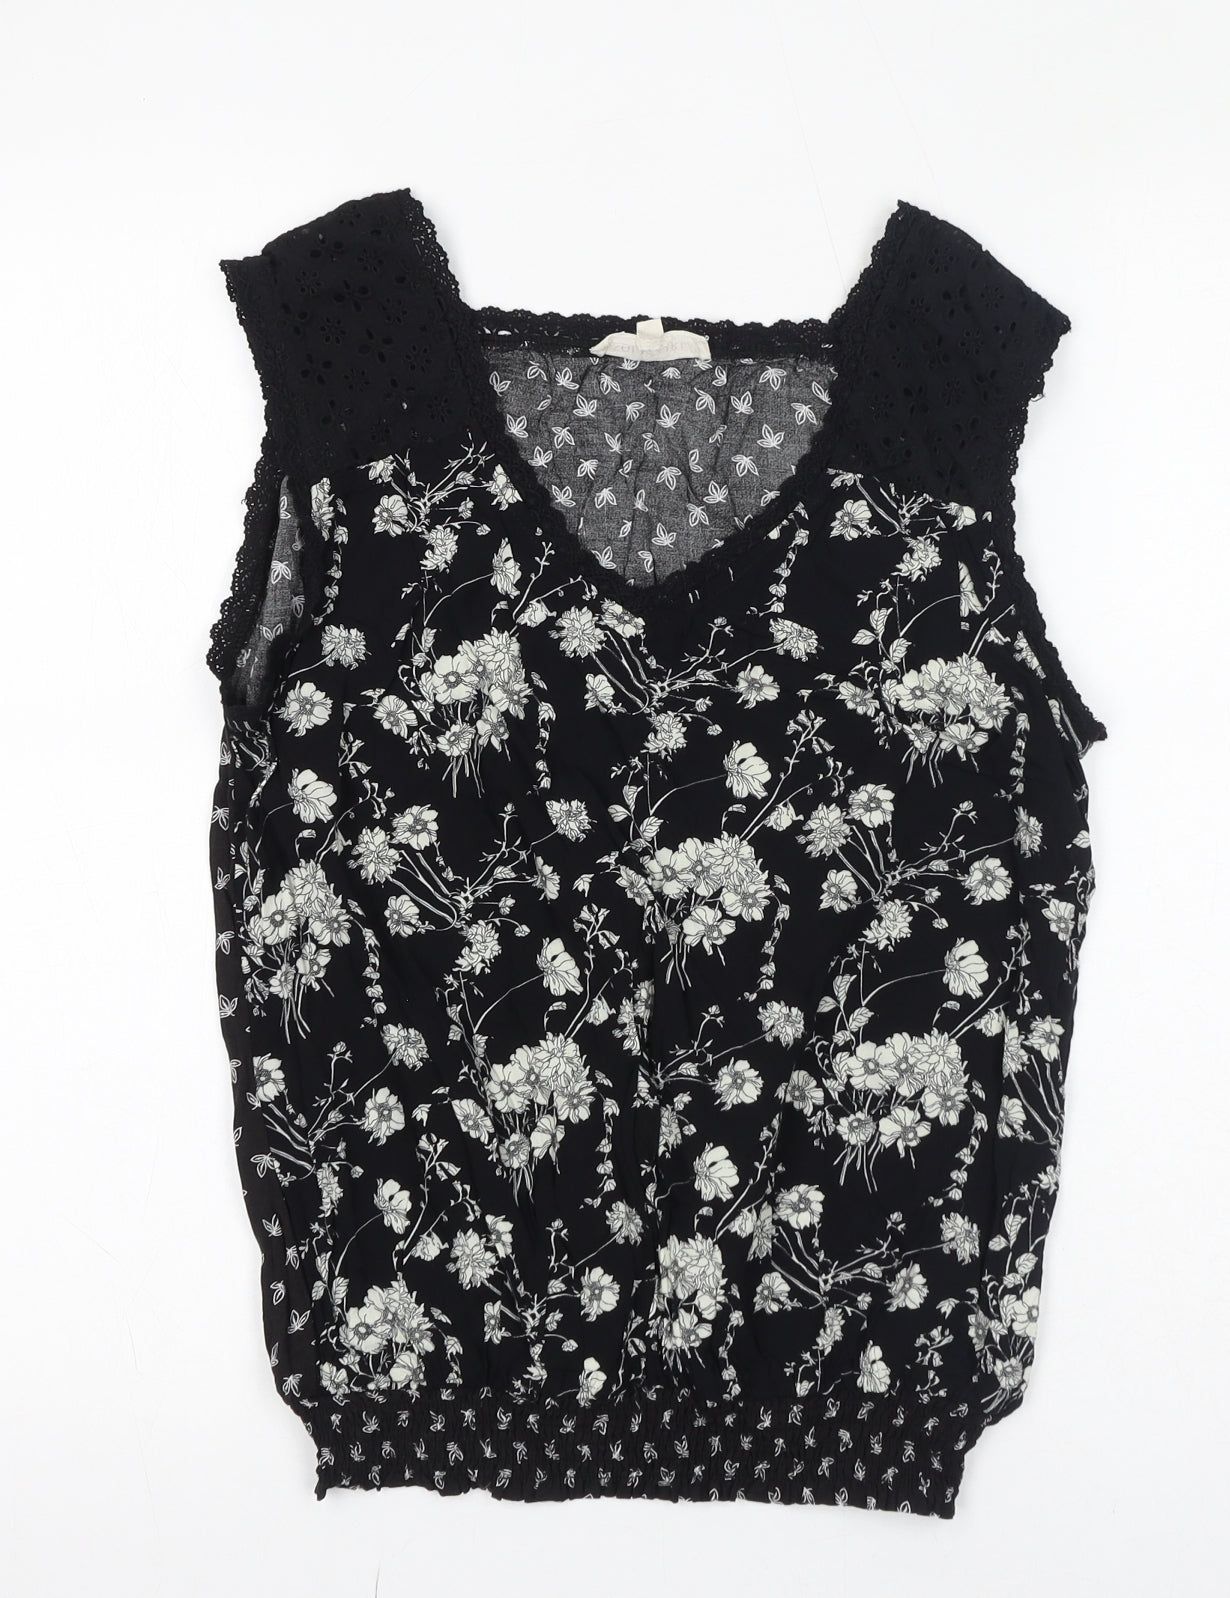 SOLITAIRE Womens Black Floral Cotton Basic Blouse Size M V-Neck